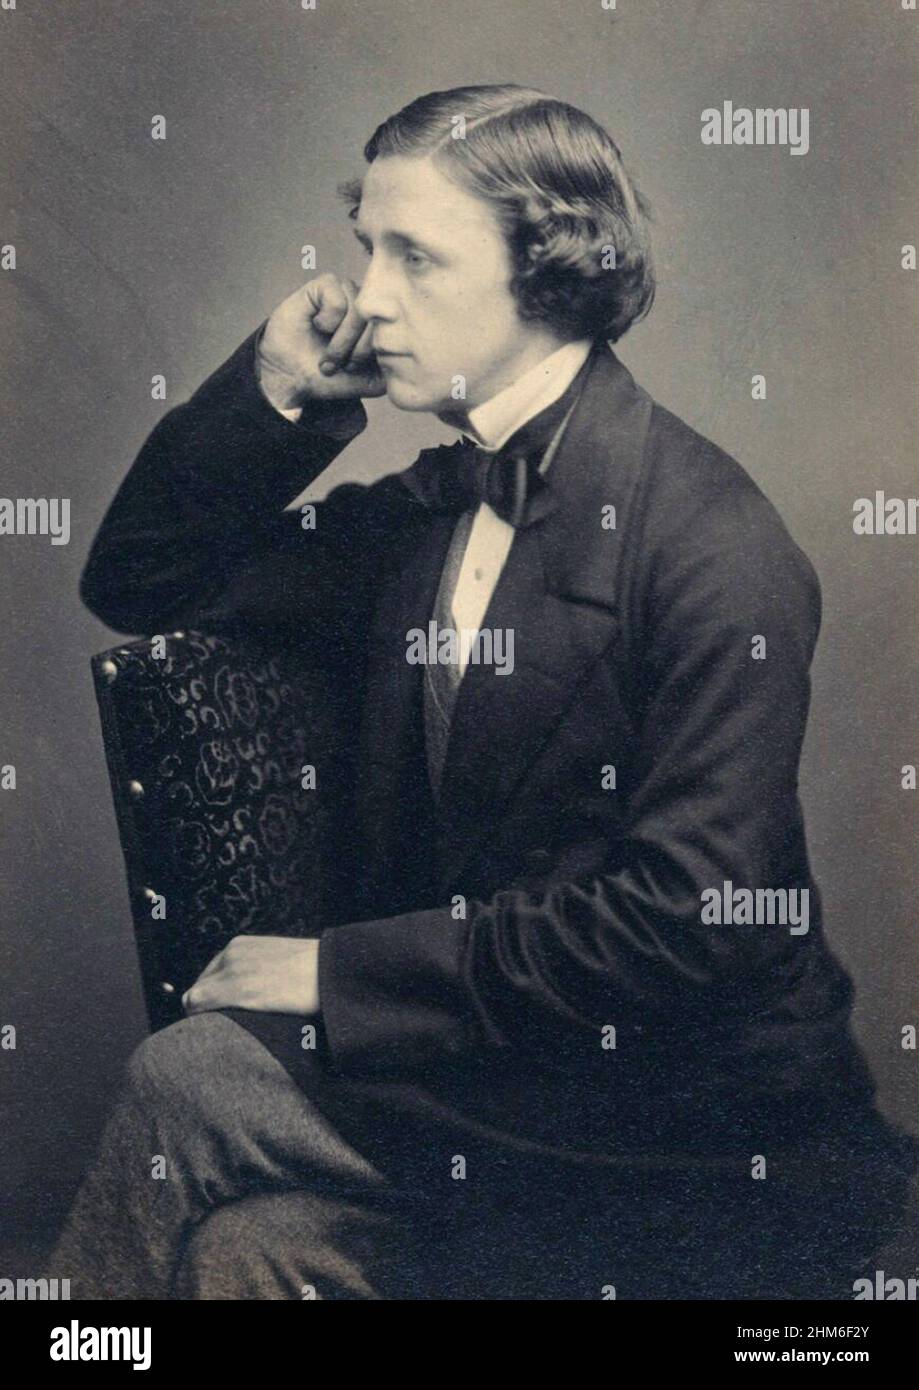 Un ritratto dell'autore Lewis Carroll (vero nome Charles Lutwidge Dodgson), autore di Alice nel paese delle meraviglie, dal 1857 quando aveva 25 anni Foto Stock